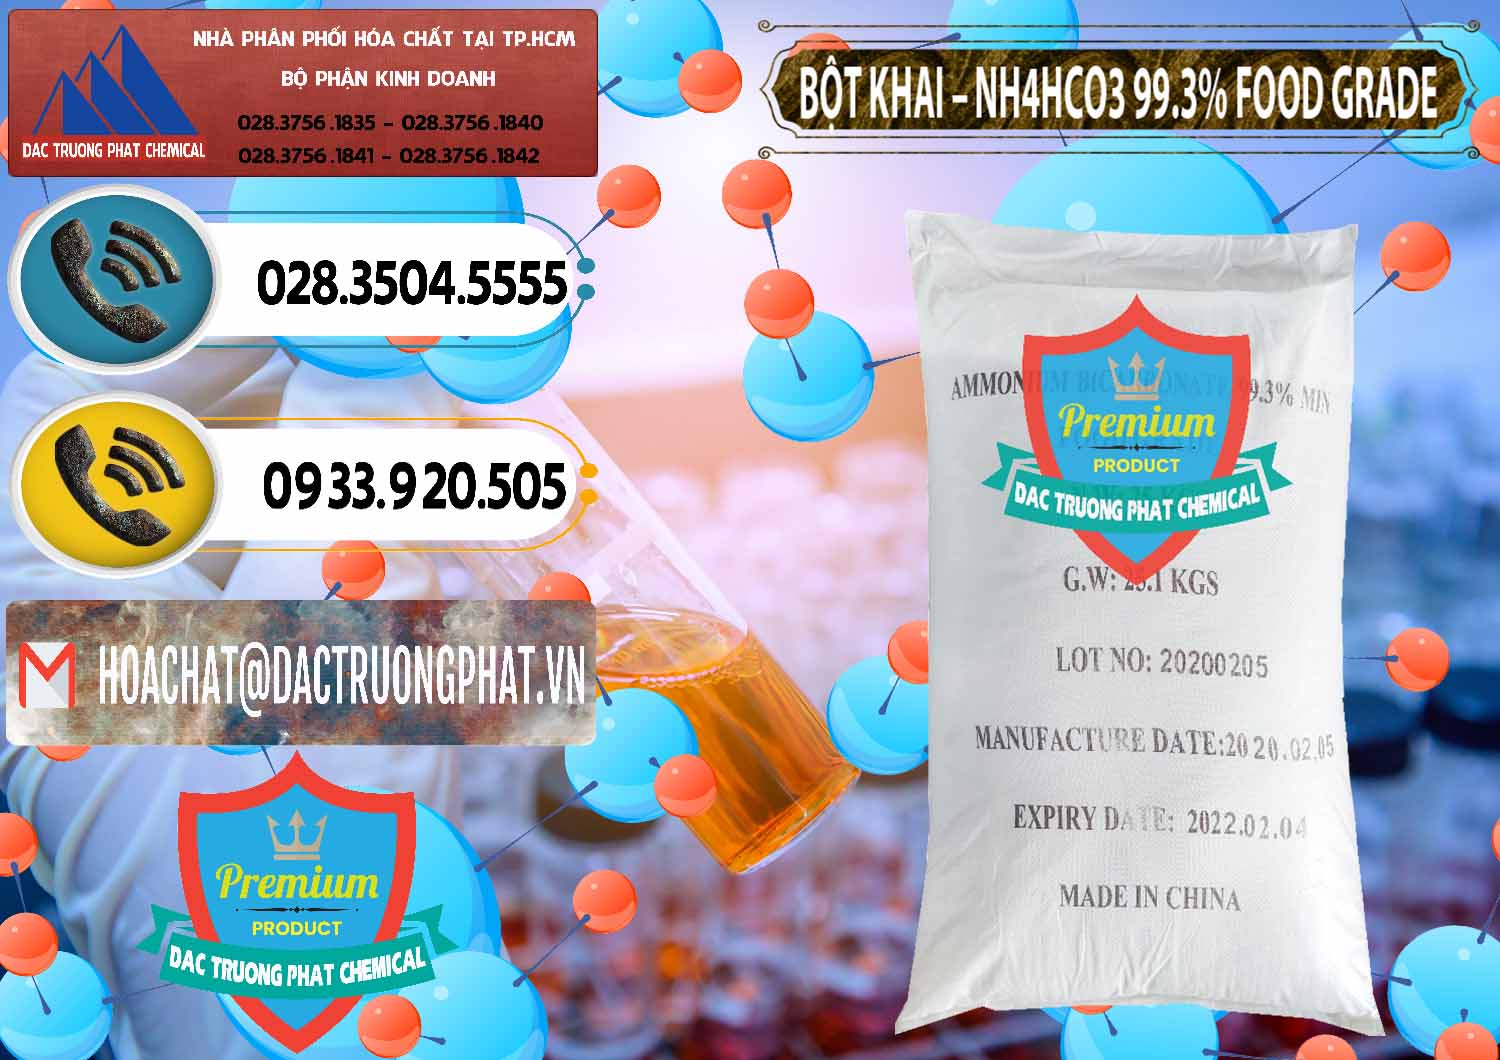 Công ty nhập khẩu ( bán ) Ammonium Bicarbonate – Bột Khai NH4HCO3 Food Grade Trung Quốc China - 0019 - Đơn vị chuyên nhập khẩu - cung cấp hóa chất tại TP.HCM - hoachatdetnhuom.vn